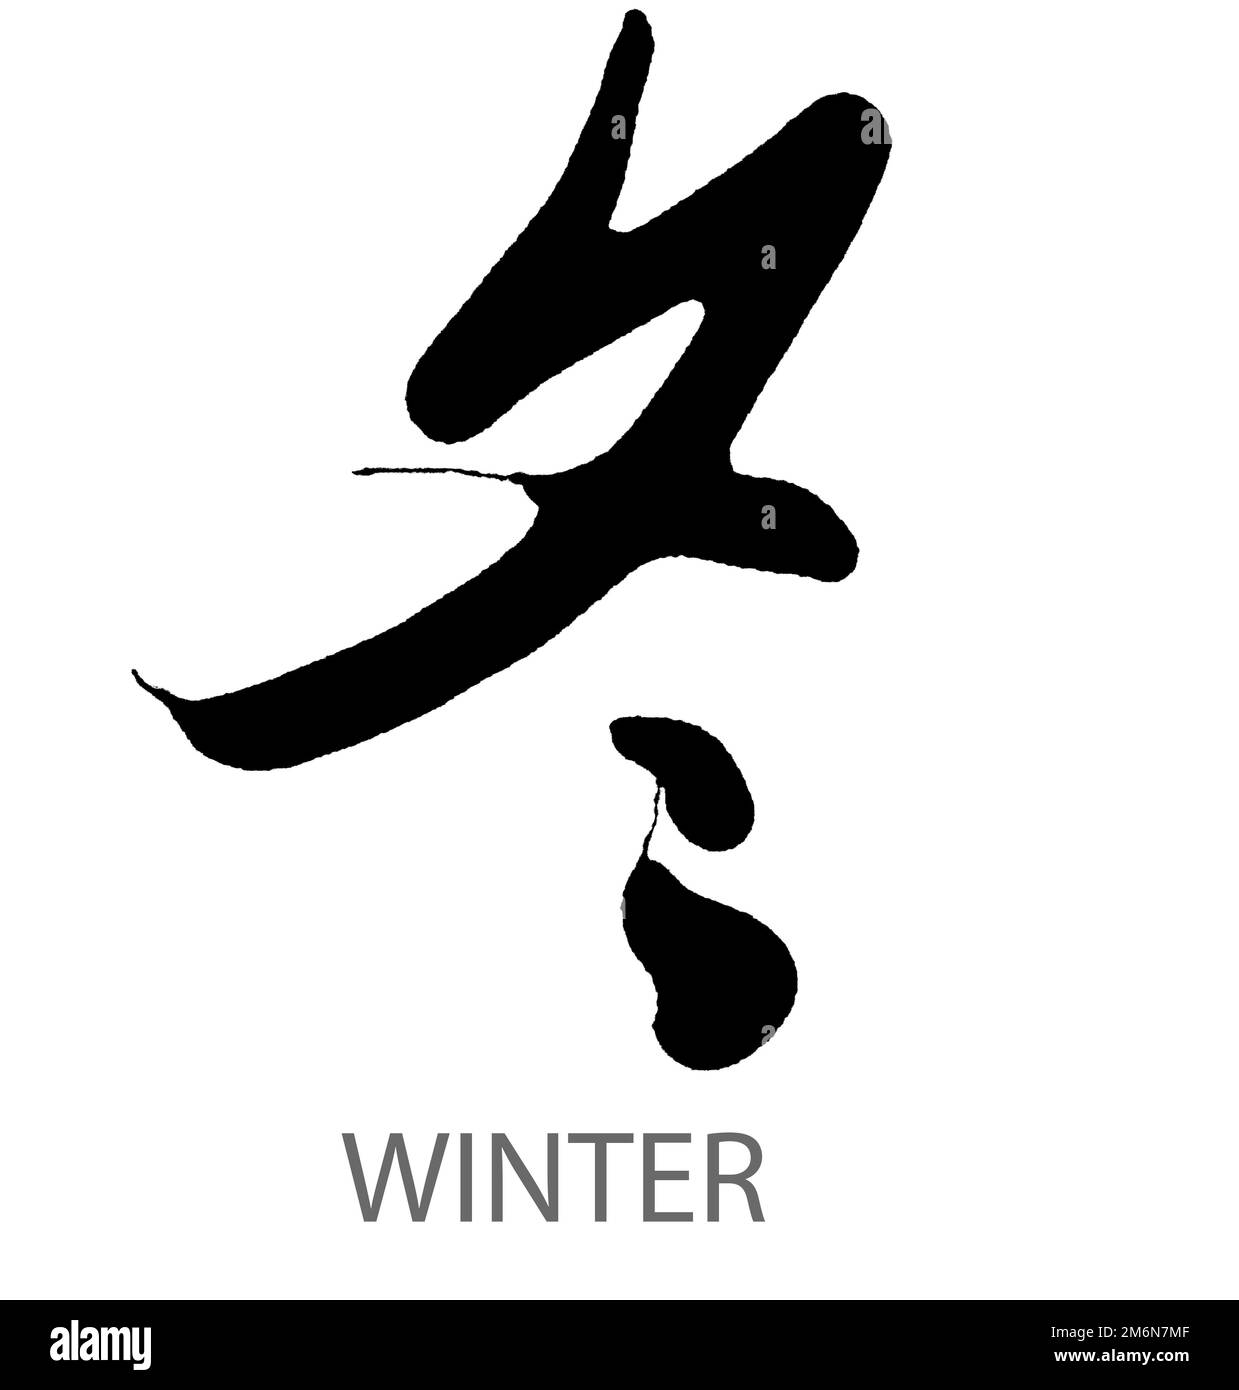 Calligrafia disegnata a mano della parola d'inverno su sfondo bianco Foto Stock